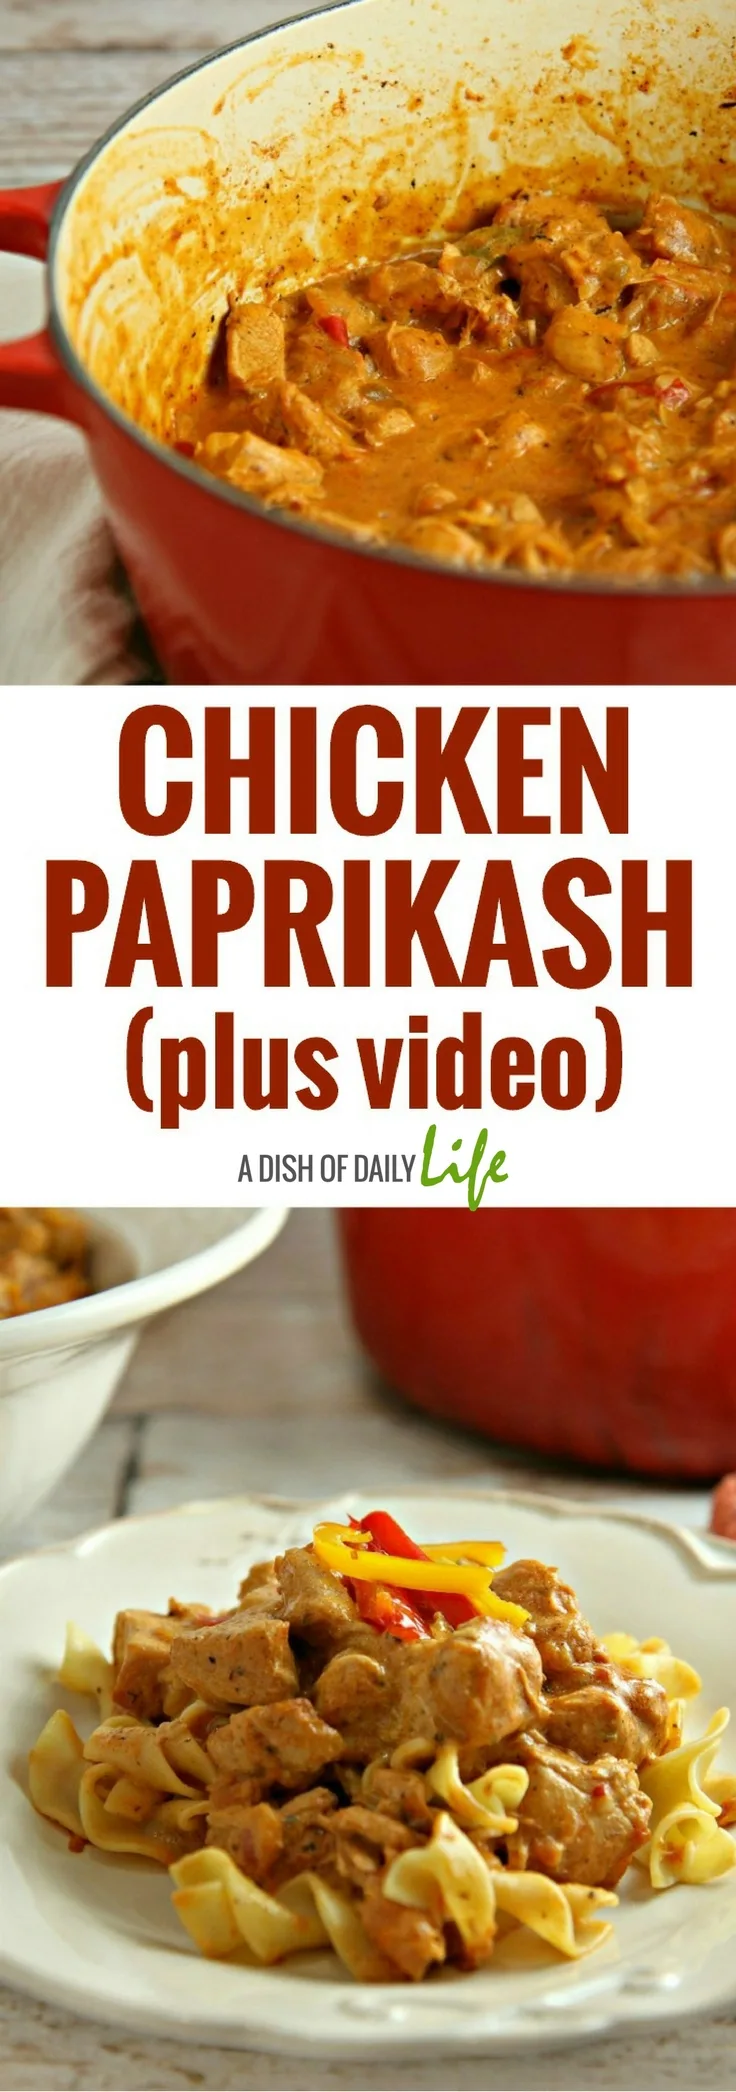 Chicken Paprikash plus video 2